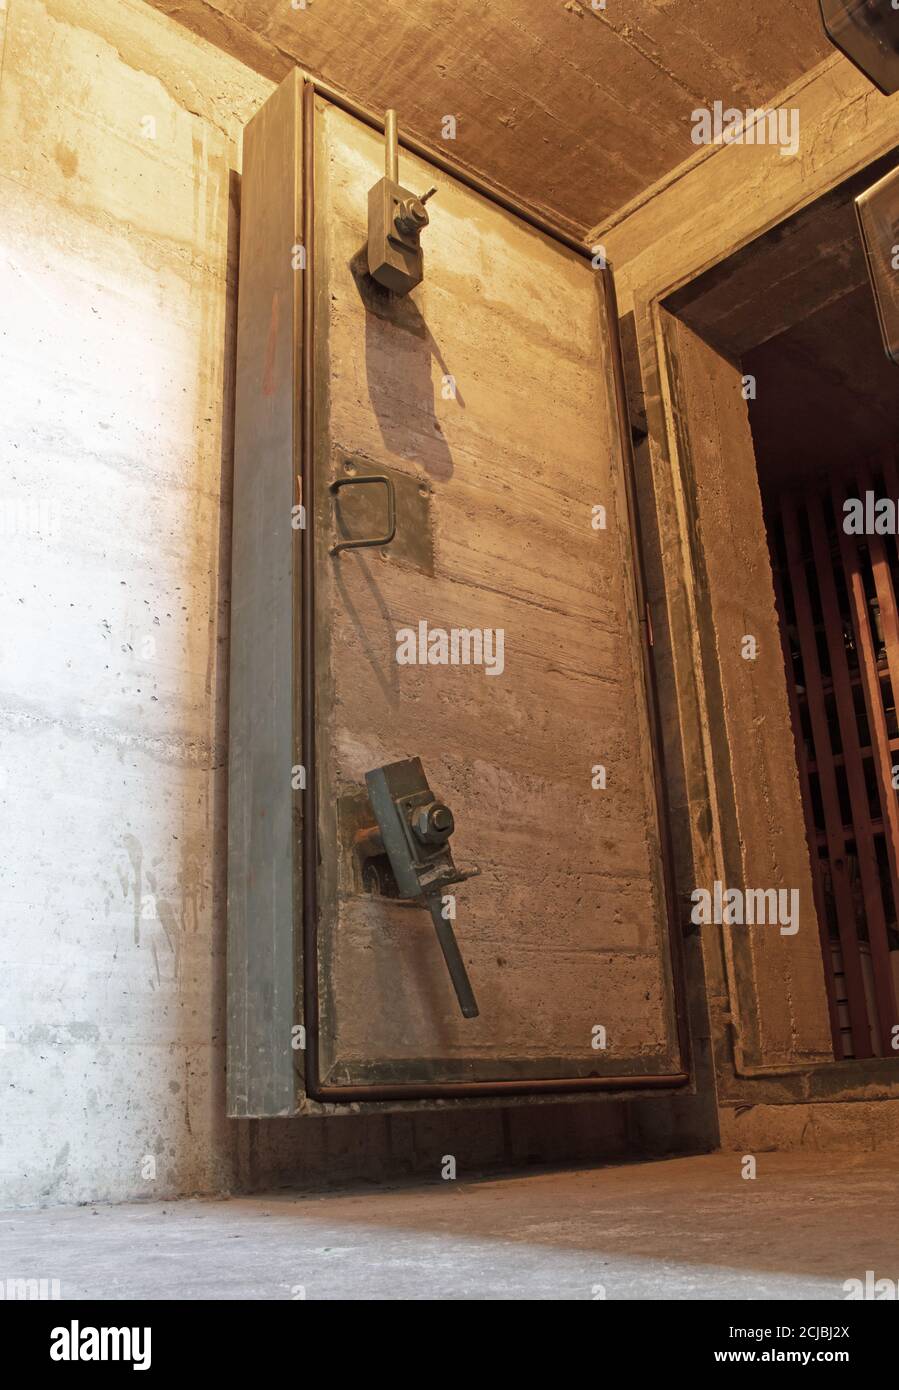 Cold war bunker interior vault door, keeping people safe Stock Photo